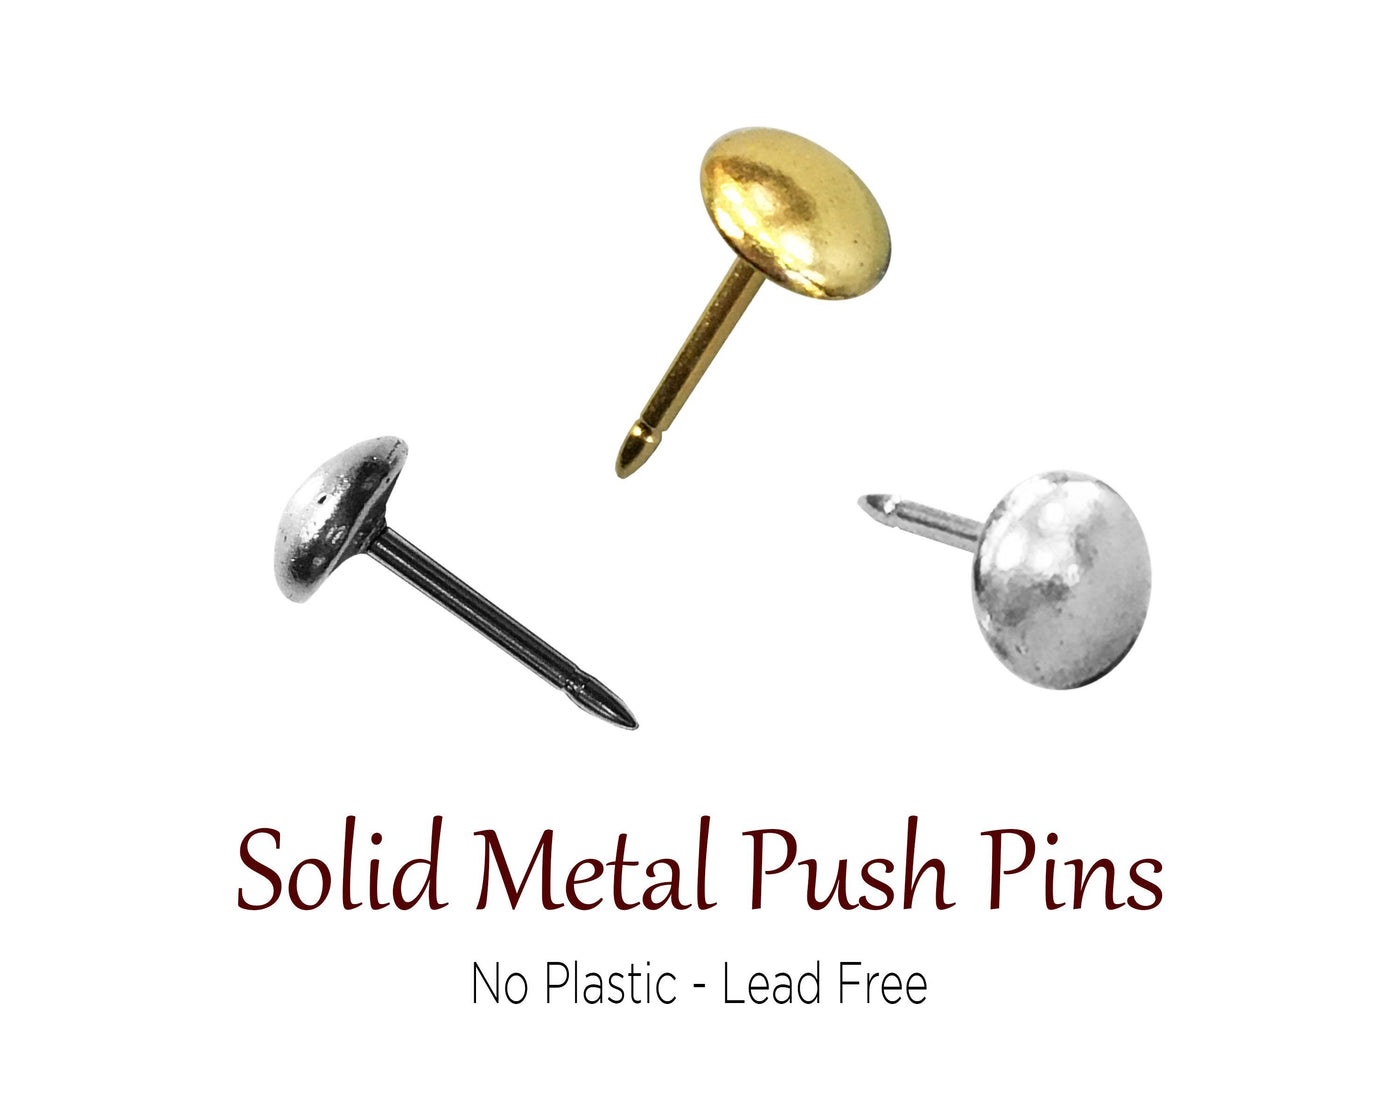 Push Pins - Dome Circle Push Pins